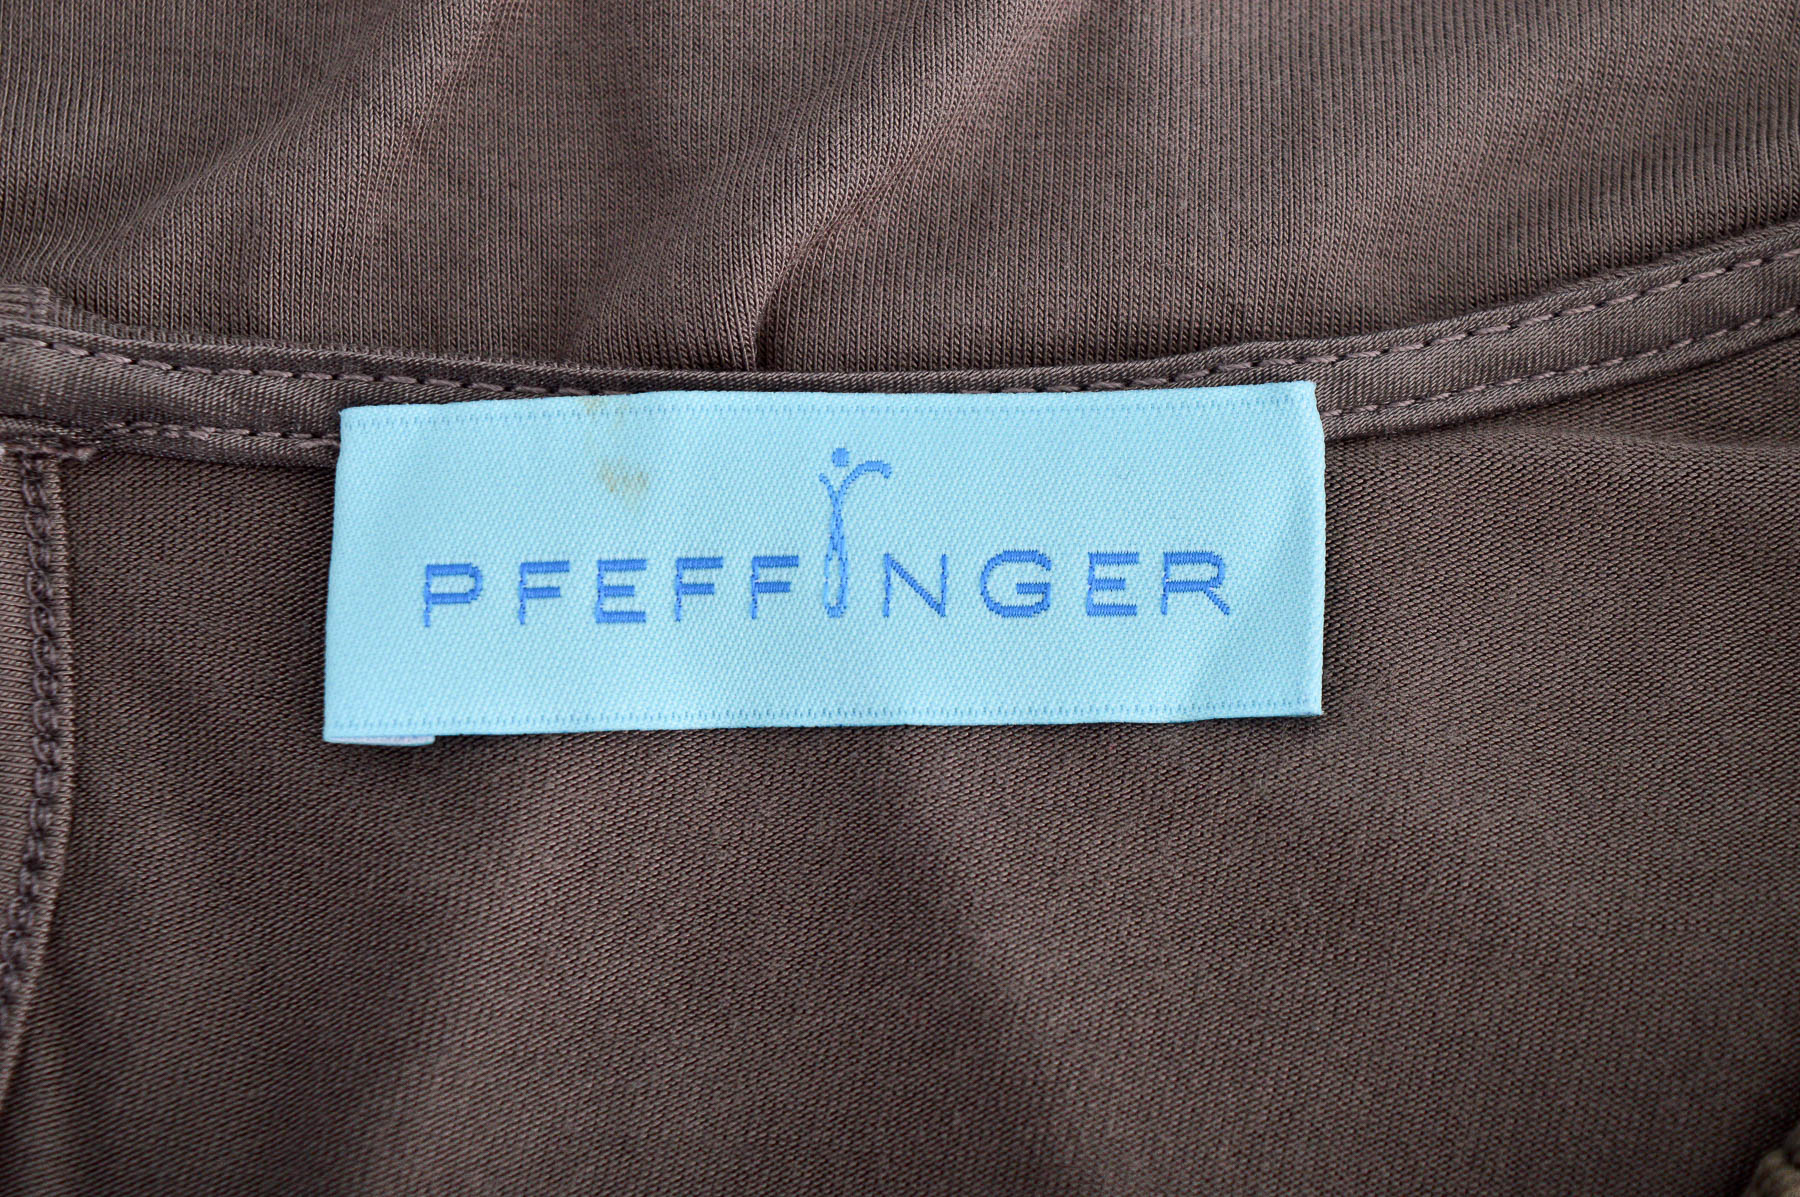 Women's blouse - PFEFFINGER - 2